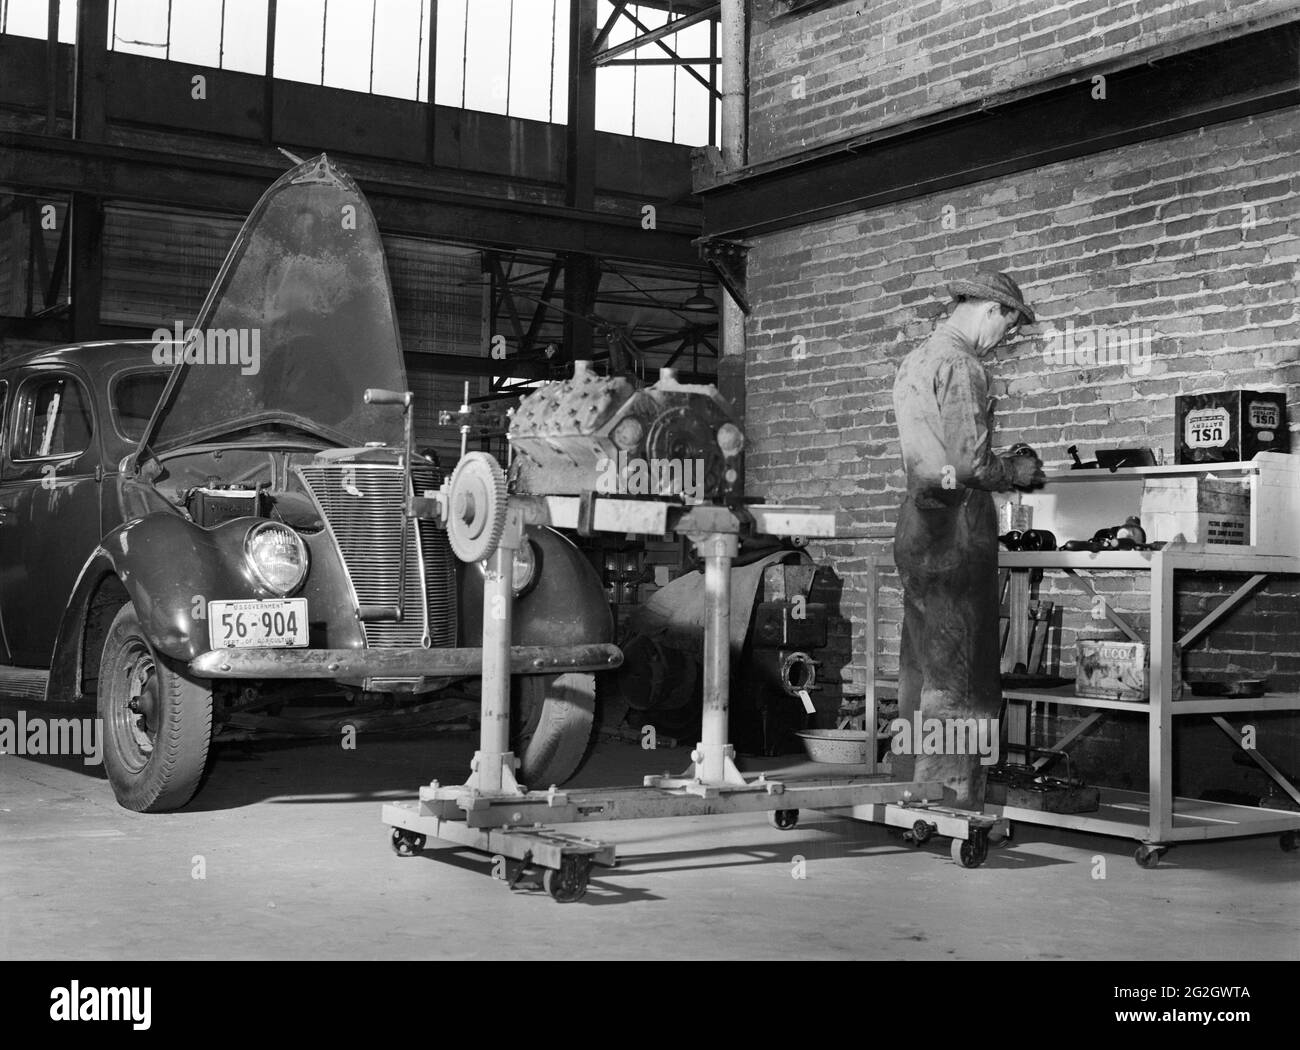 Mecánico de reparación de Automobile Motor, Farm Security Administration (FSA) Warehouse Depot, Atlanta, Georgia, EE.UU., Marion Post Wolcott, Administración de Seguridad Agrícola de los Estados Unidos, mayo de 1939 Foto de stock